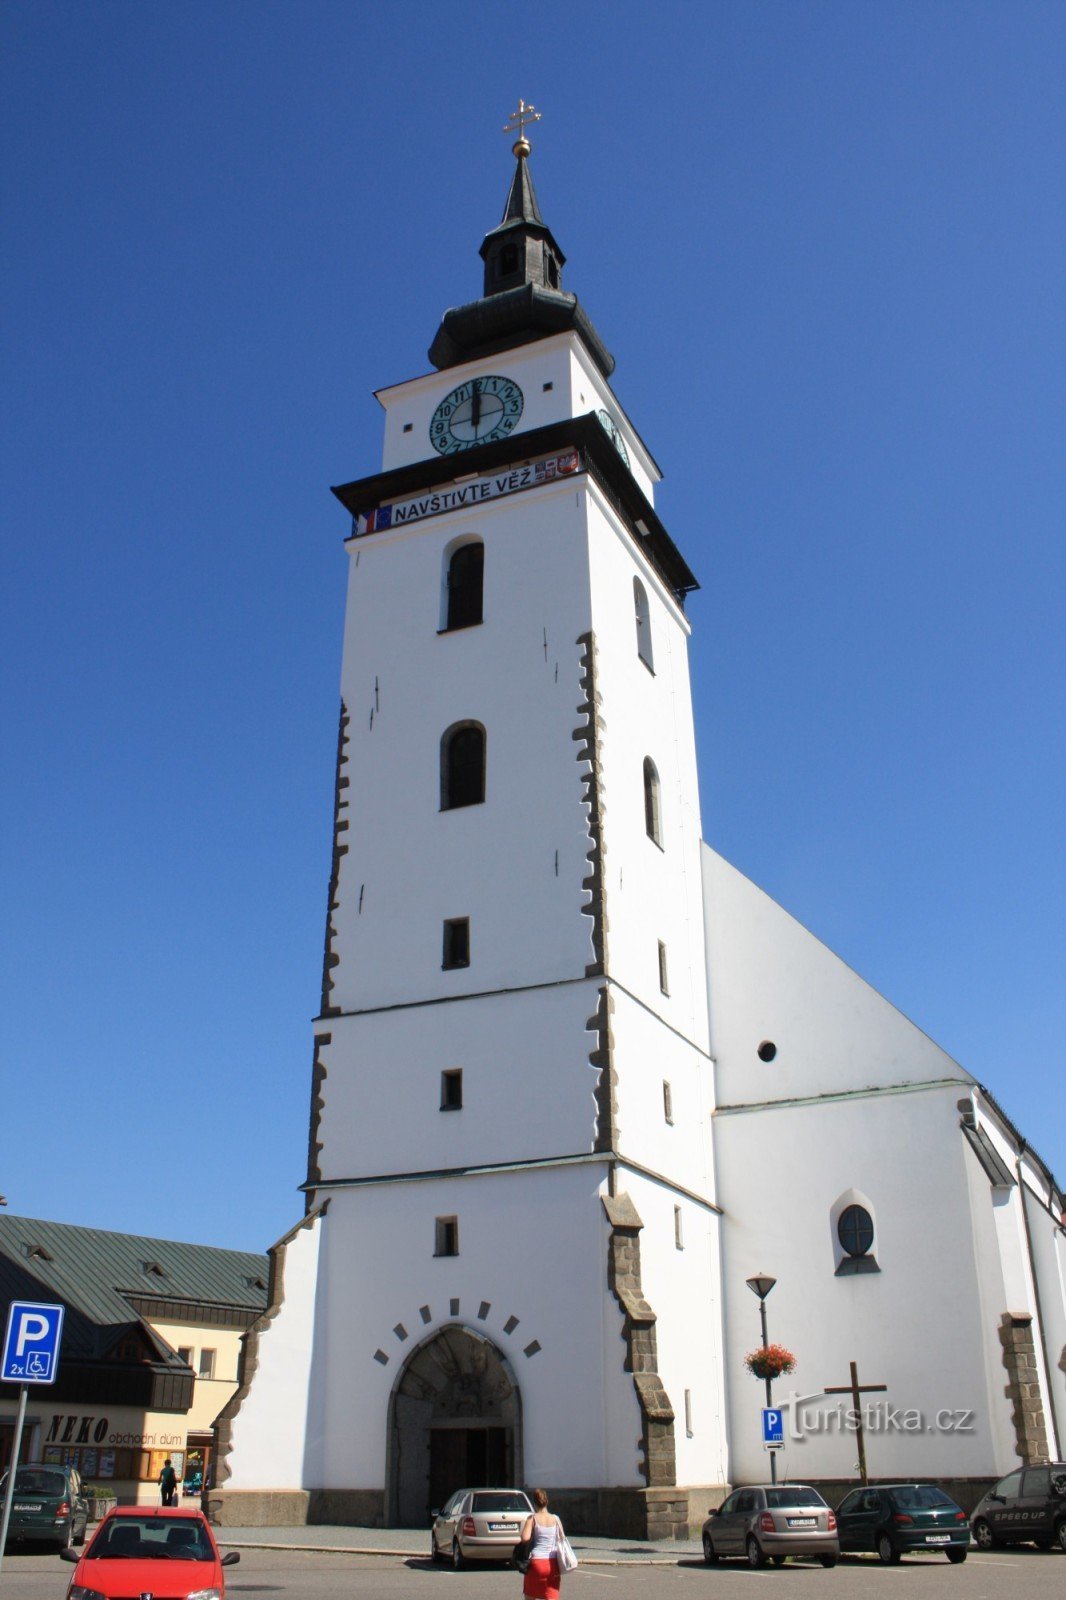 Velé Meziříčí - torre de la ciudad